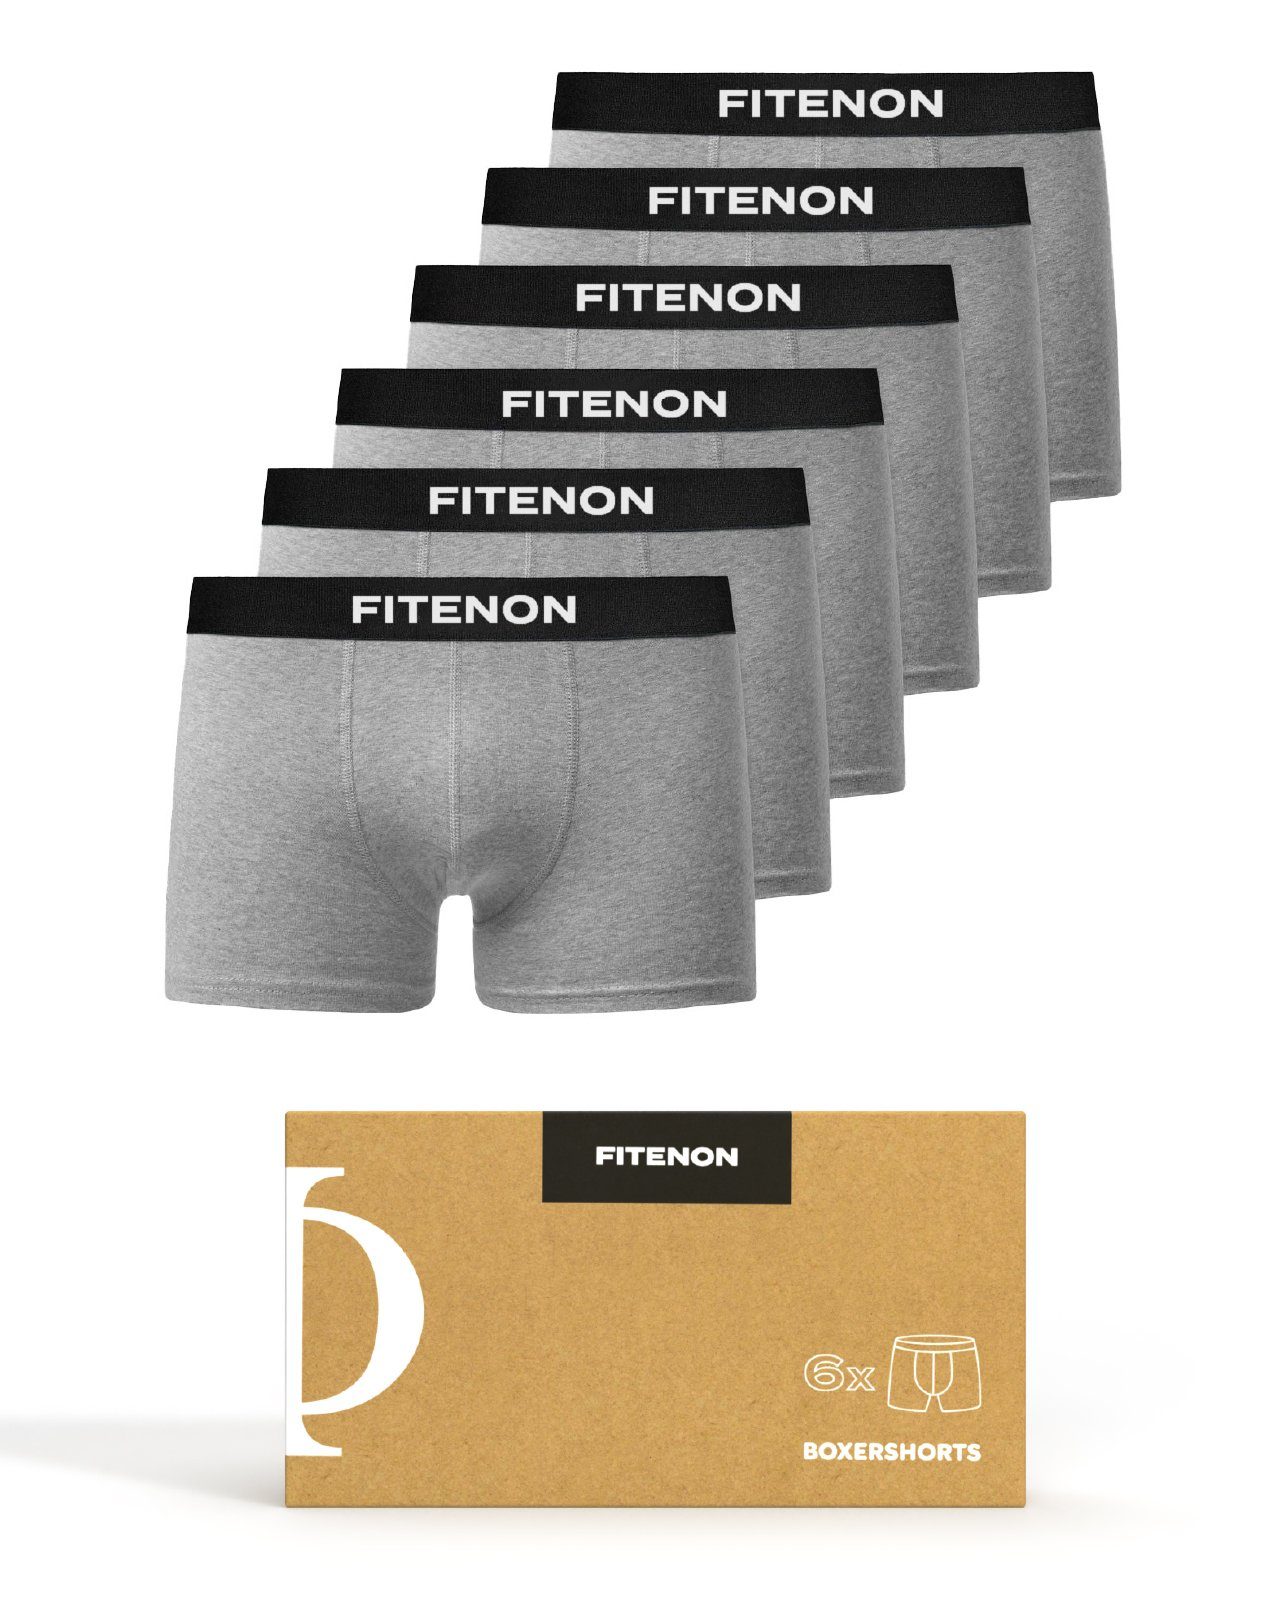 Grau kratzenden FITENON Unterhosen, Logo-Elastikbund Zettel, ohne Baumwolle (6 6x er Set) Boxershorts Herren Unterwäsche, mit